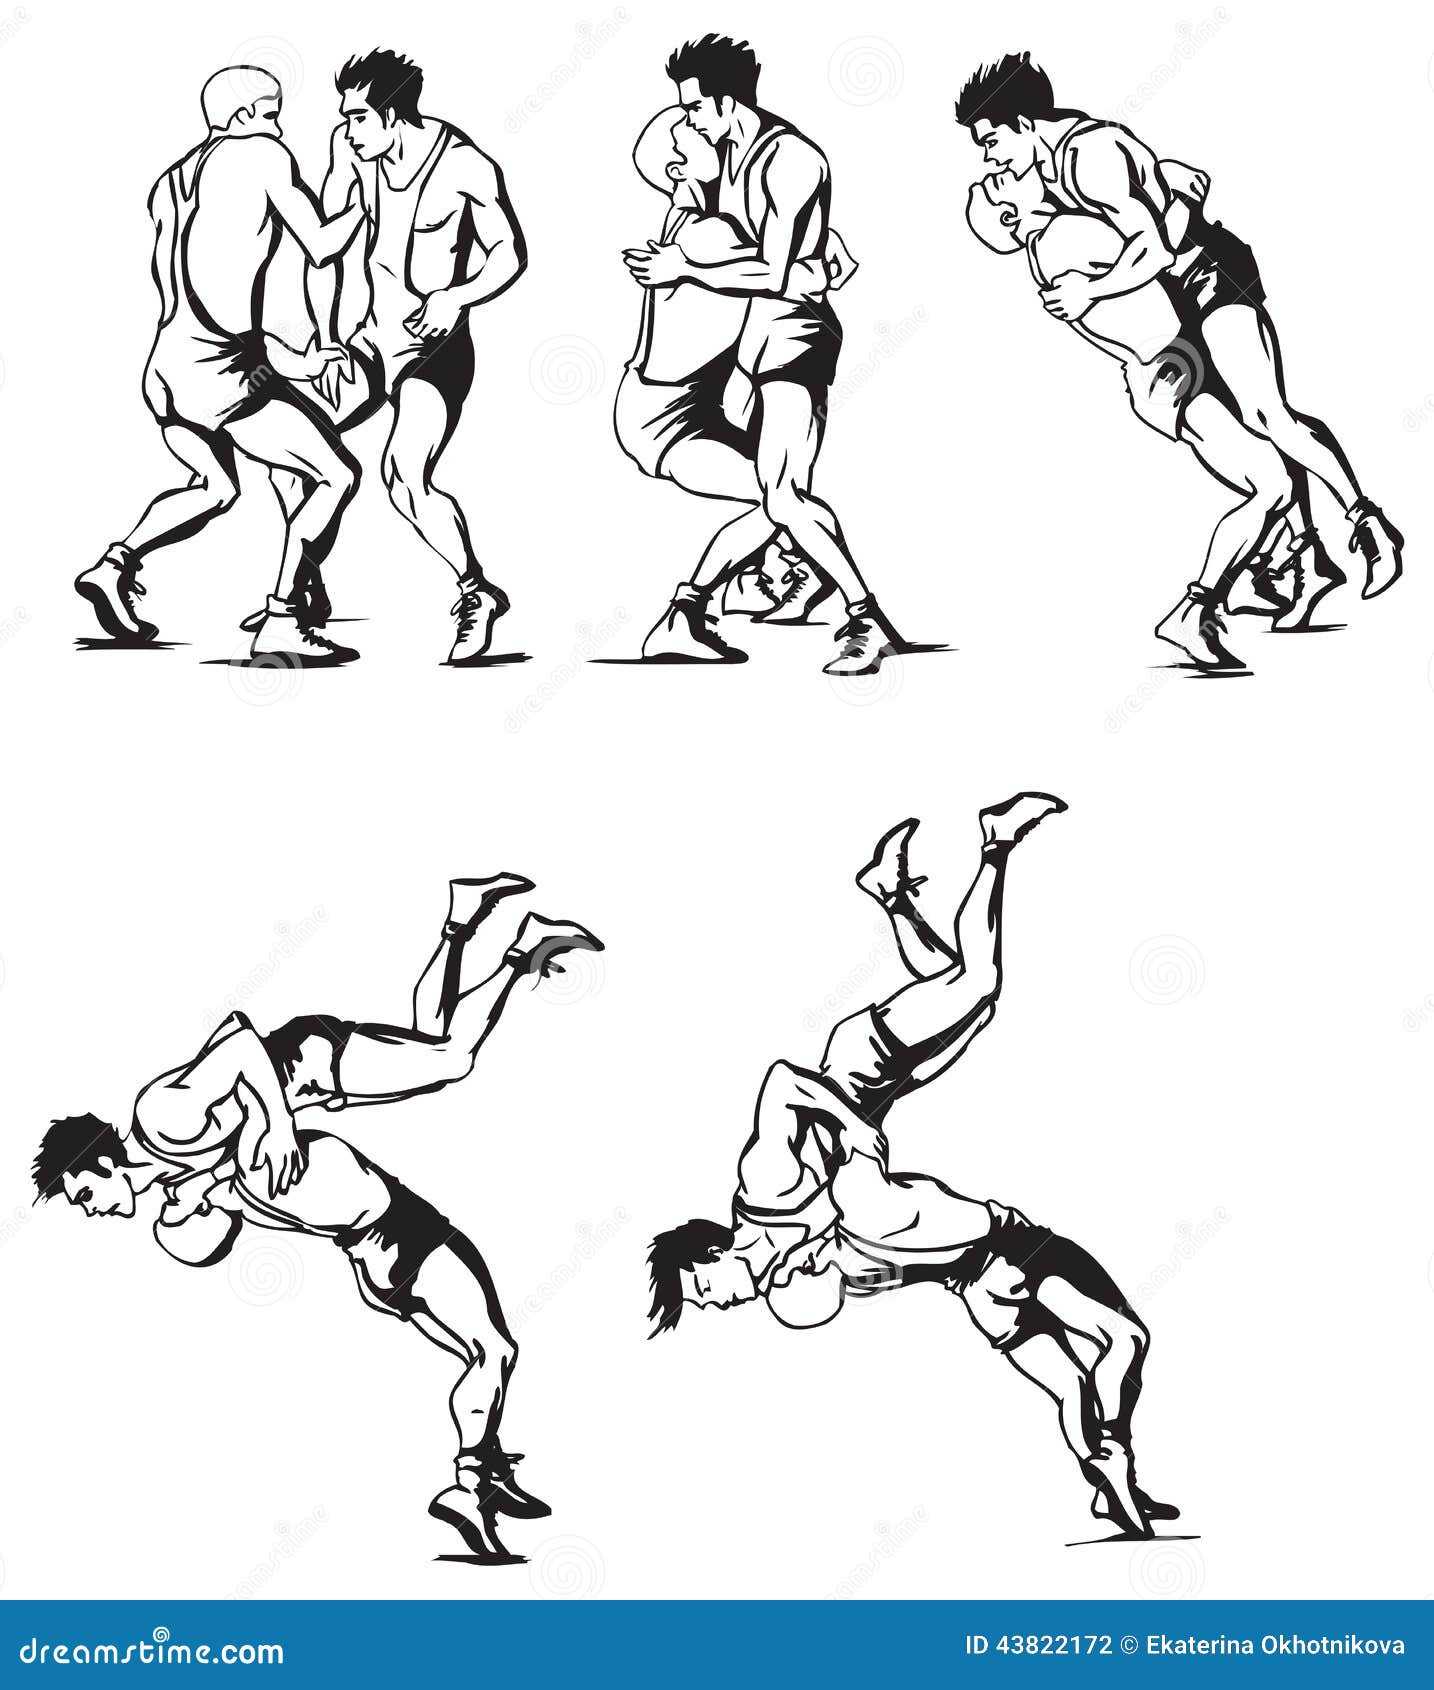 greco-roman wrestling